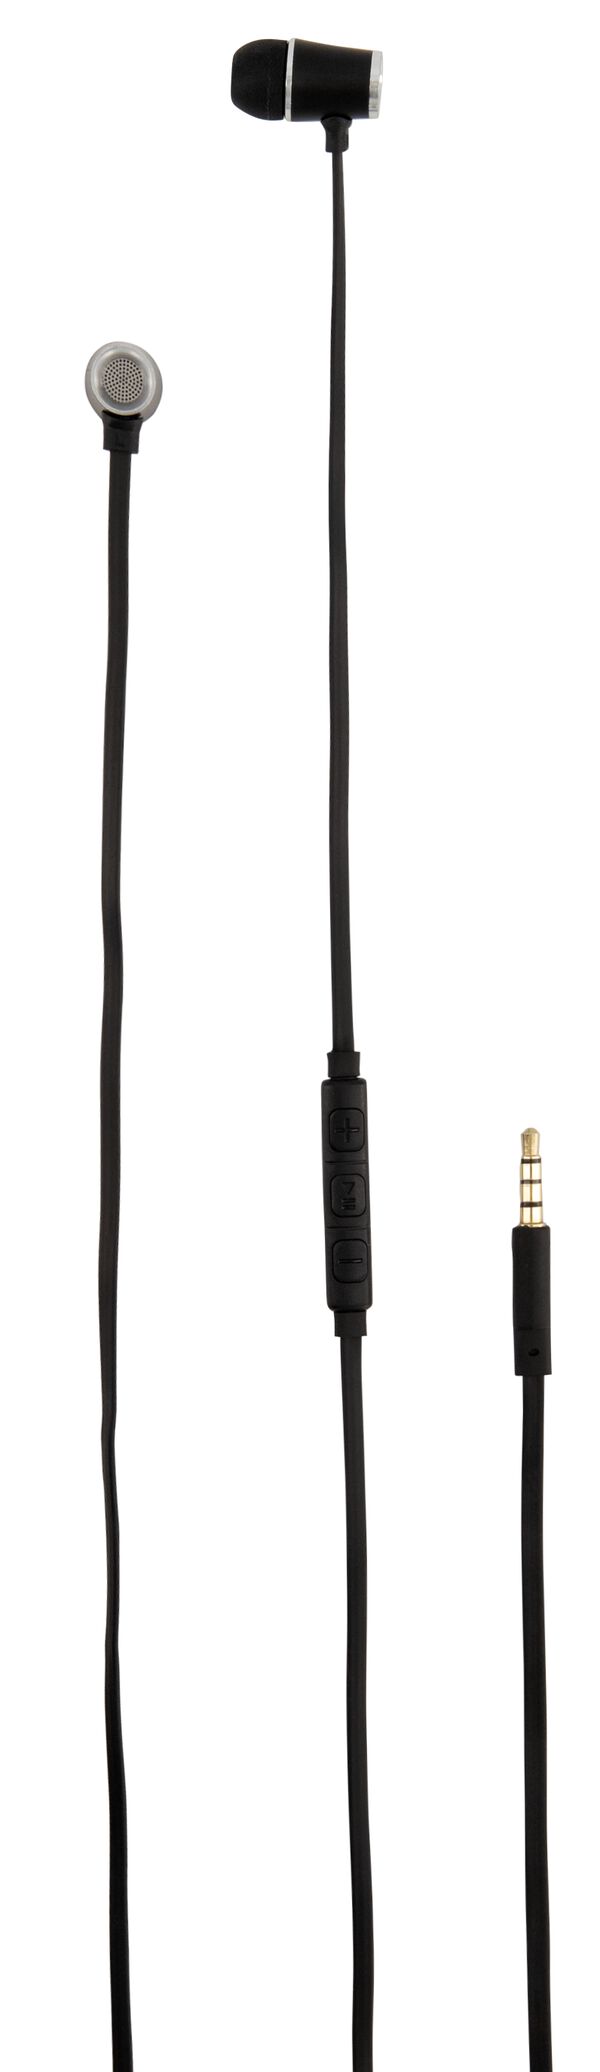 oortelefoon in-ear premium zwart - 39620022 - HEMA